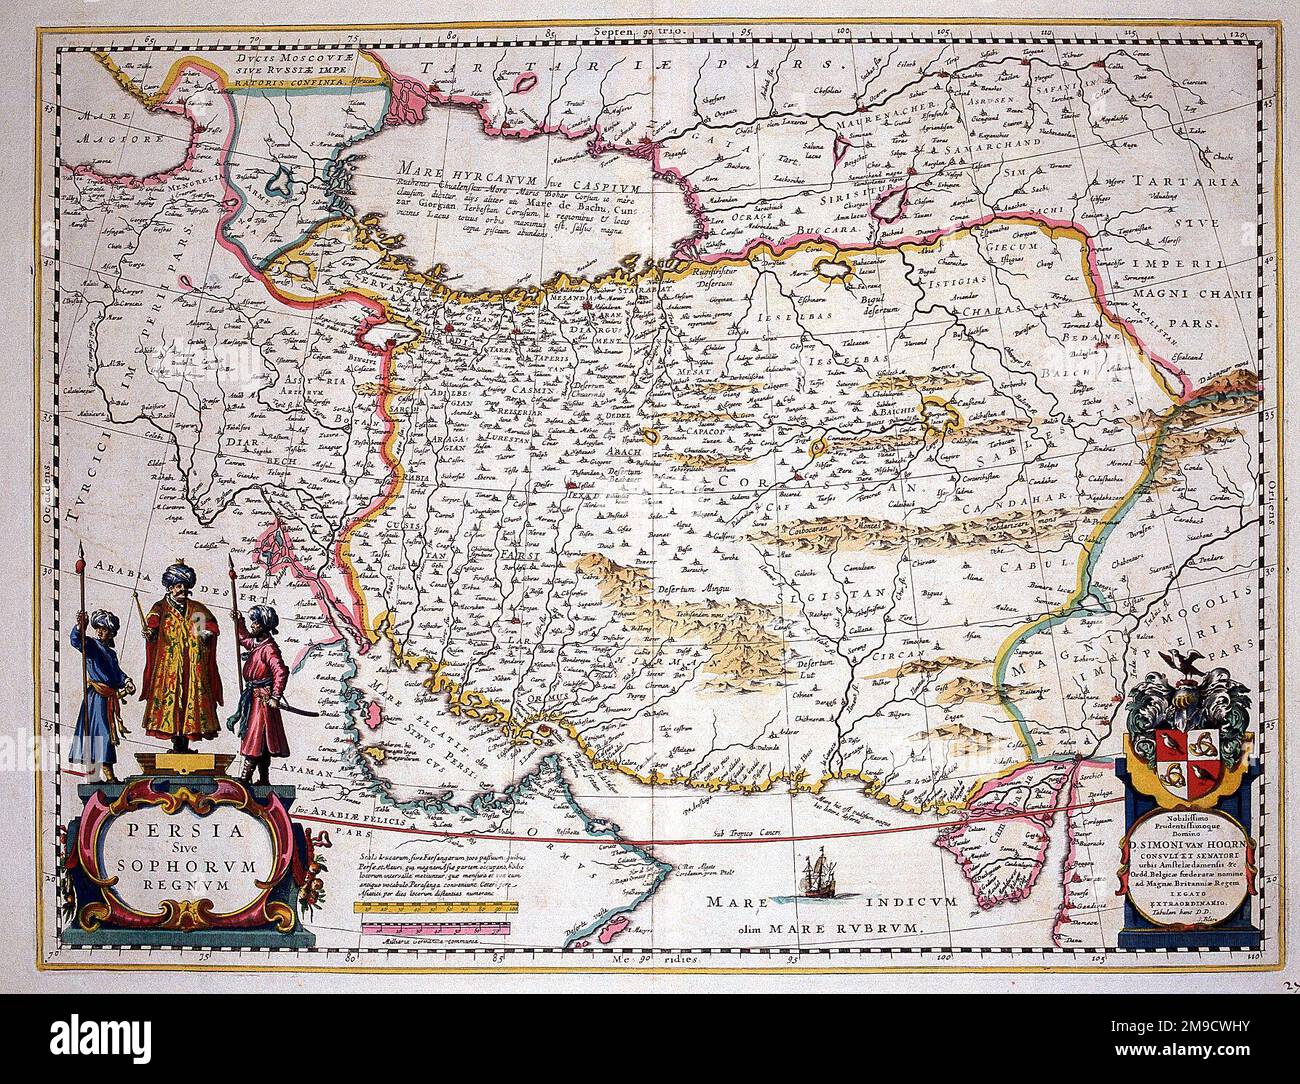 17th century Map of Persia (Iran) - Persia sive Sophorum regnum Stock Photo